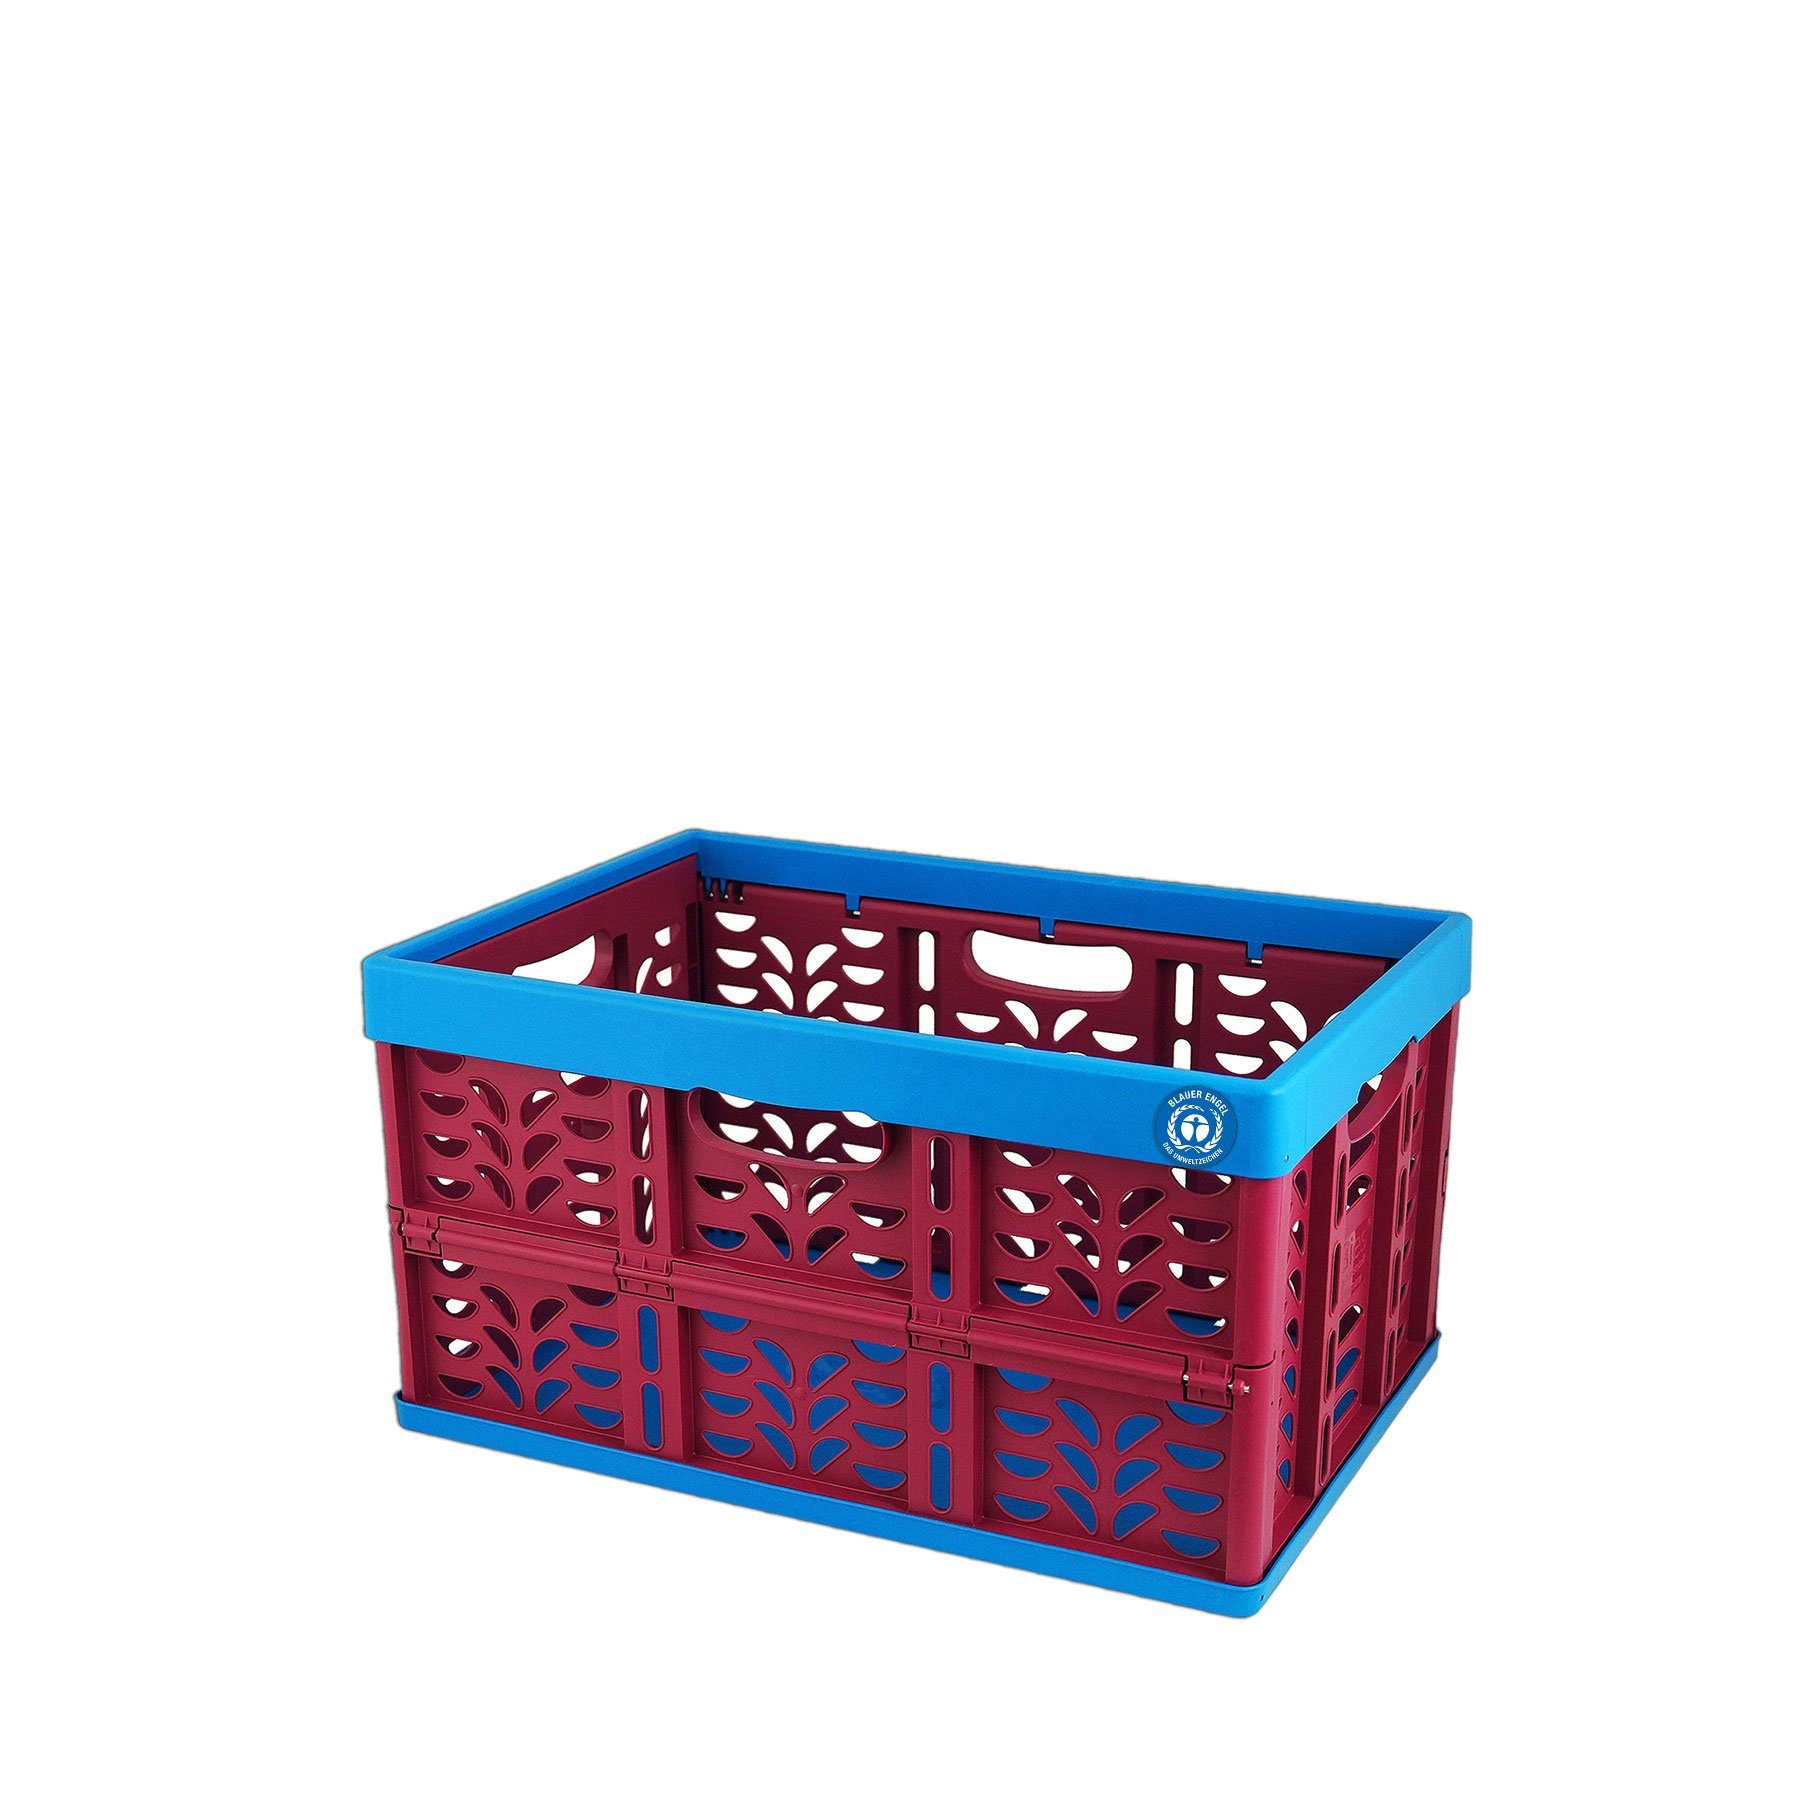 2 X Klappbox Klein mit Henkel,Einkaufskorb Klappbar,Klappkiste